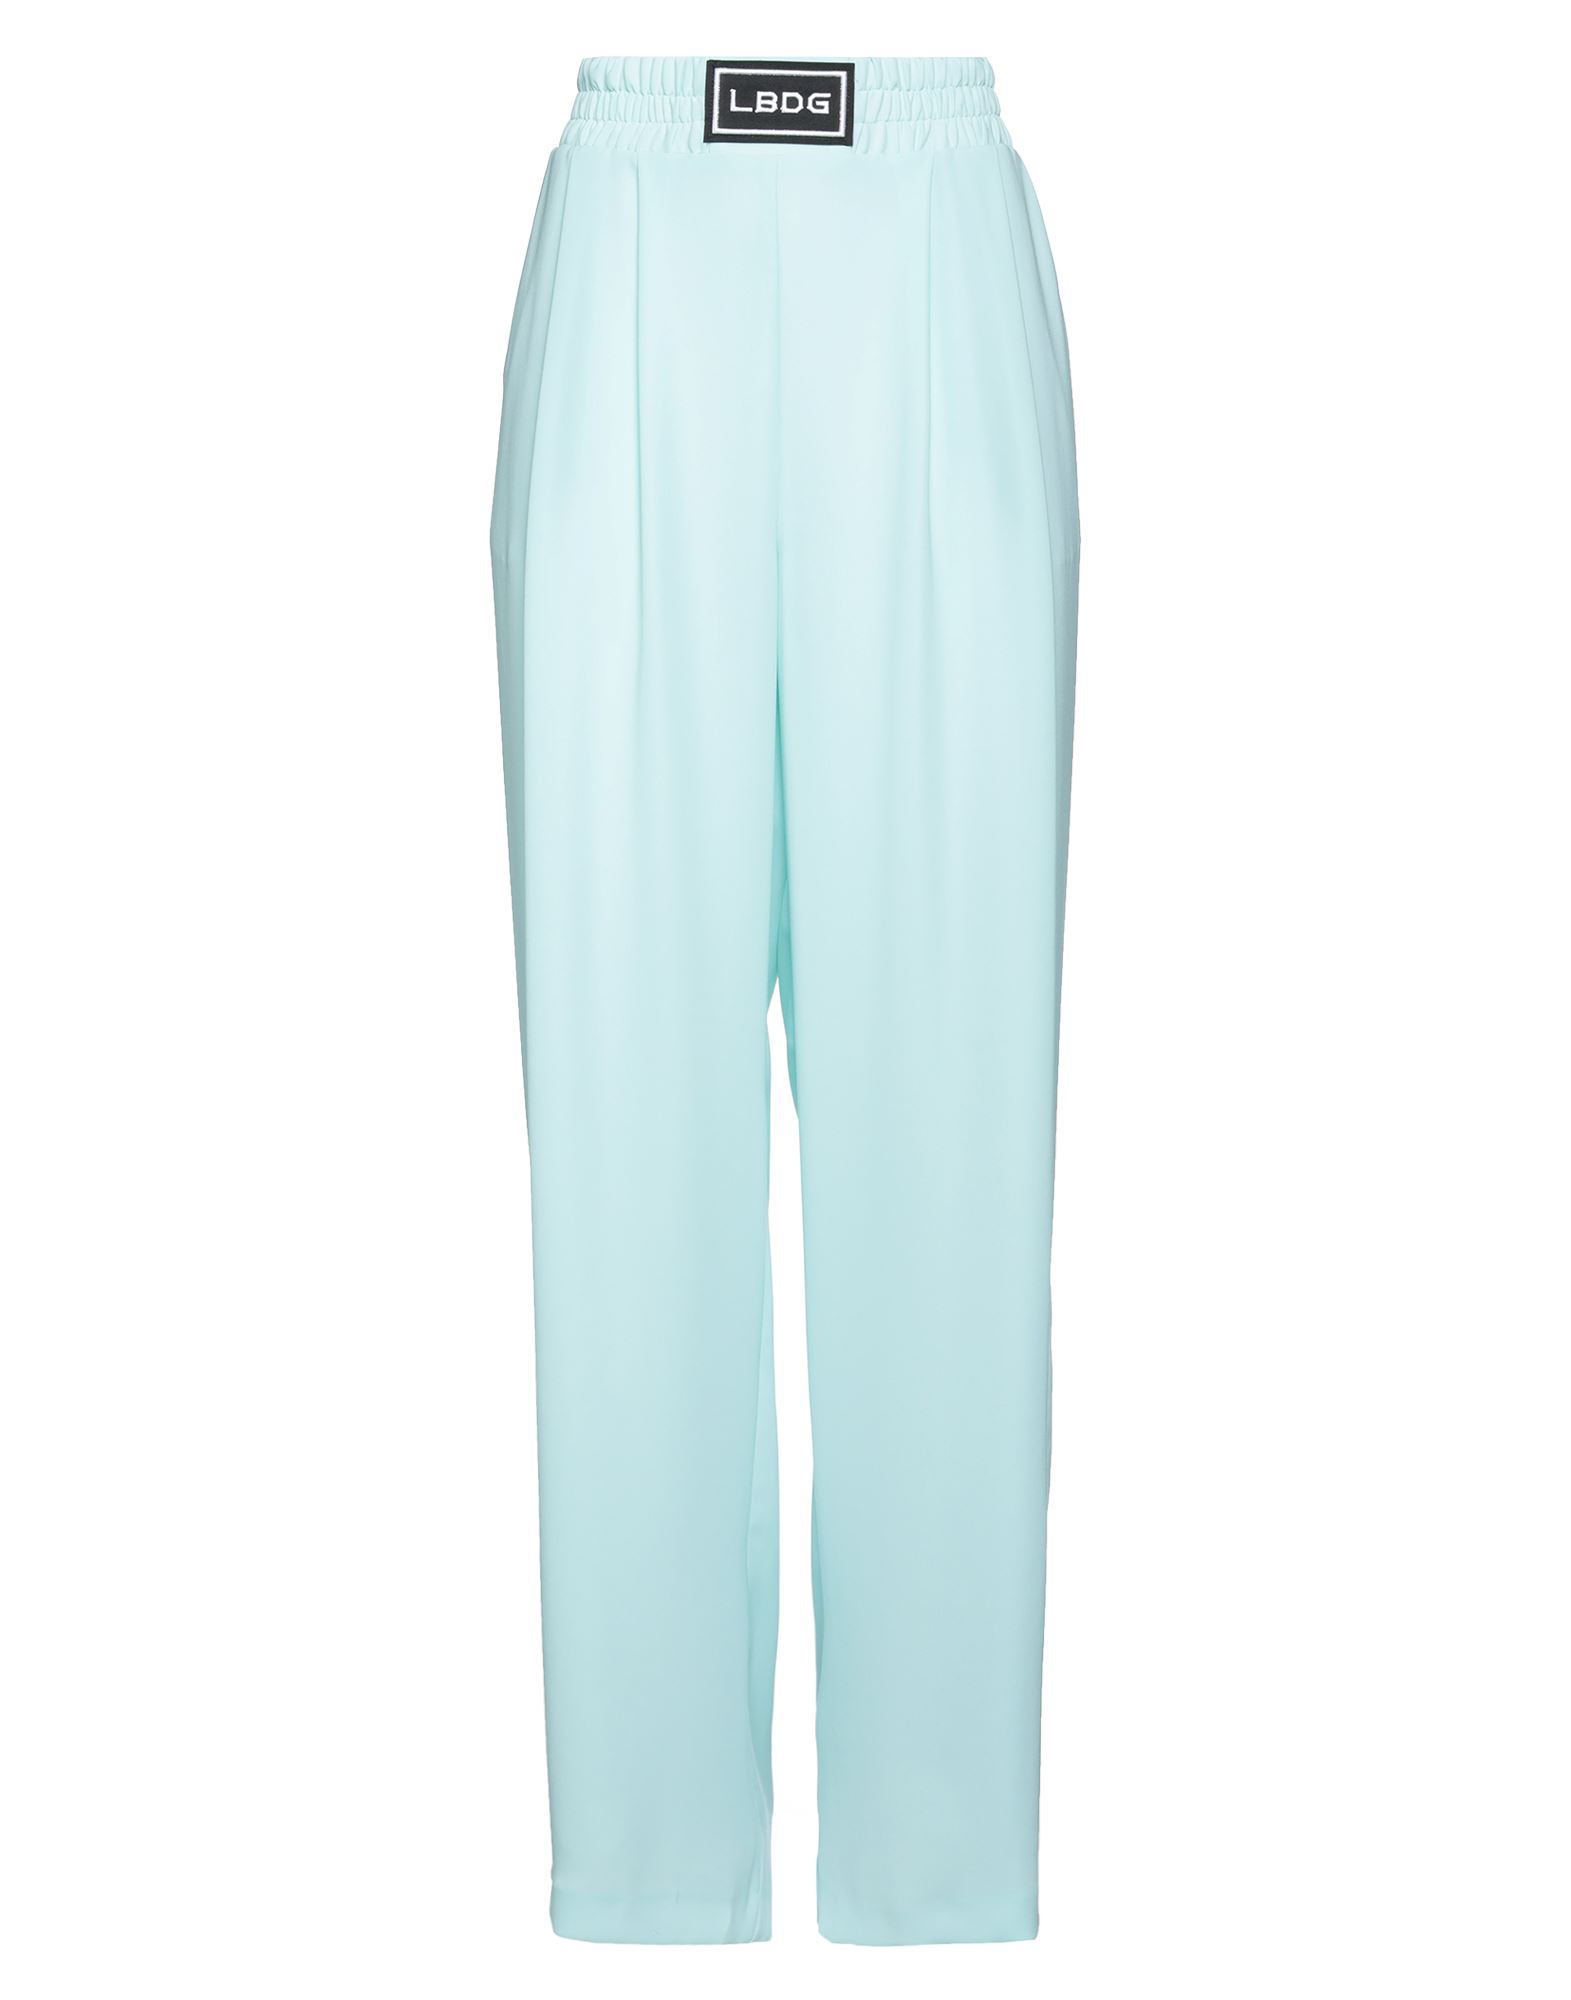 Les Bourdelles Des Garçons Woman Pants Sky Blue Size 10 Polyester